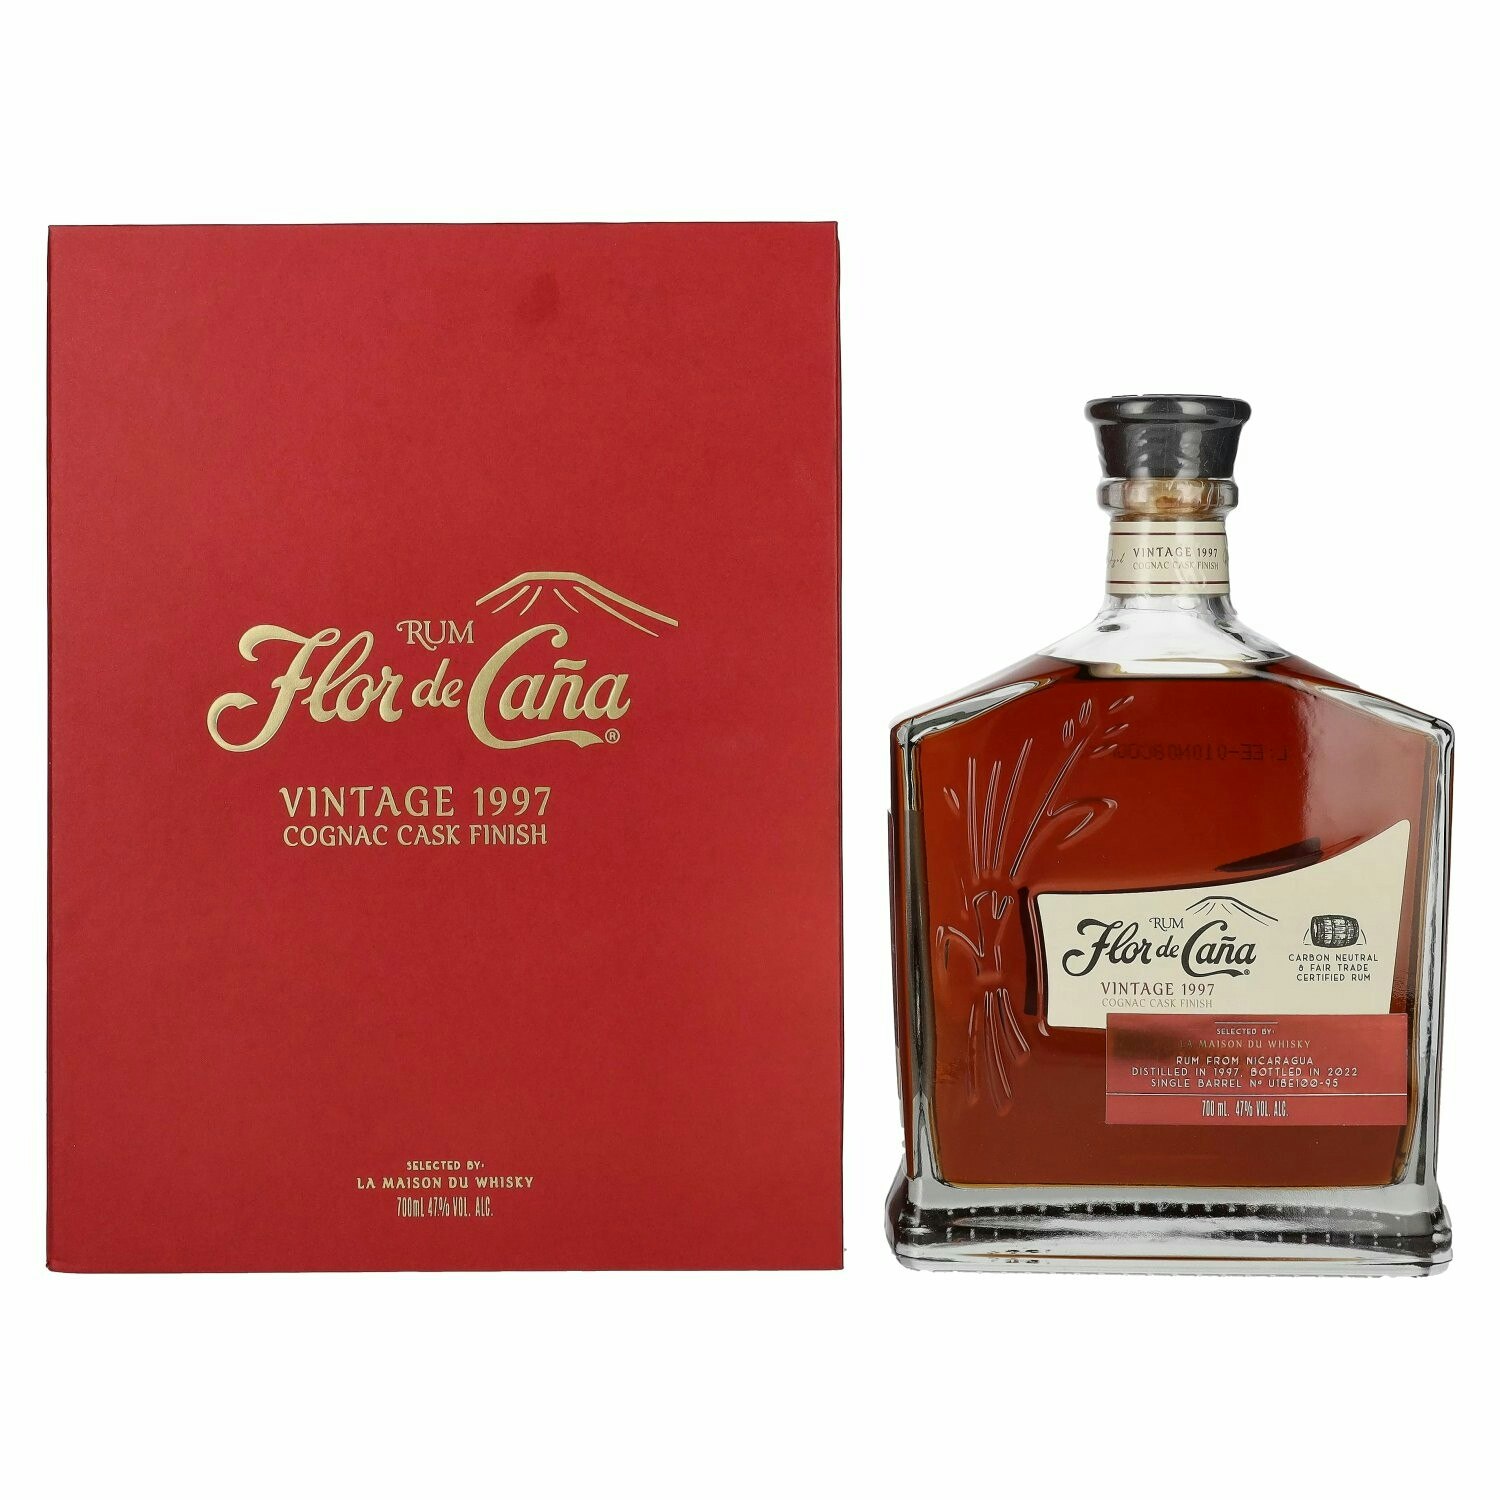 Flor de Caña Rum Cognac Cask Finish Vintage 1997 47% Vol. 0,7l in Giftbox